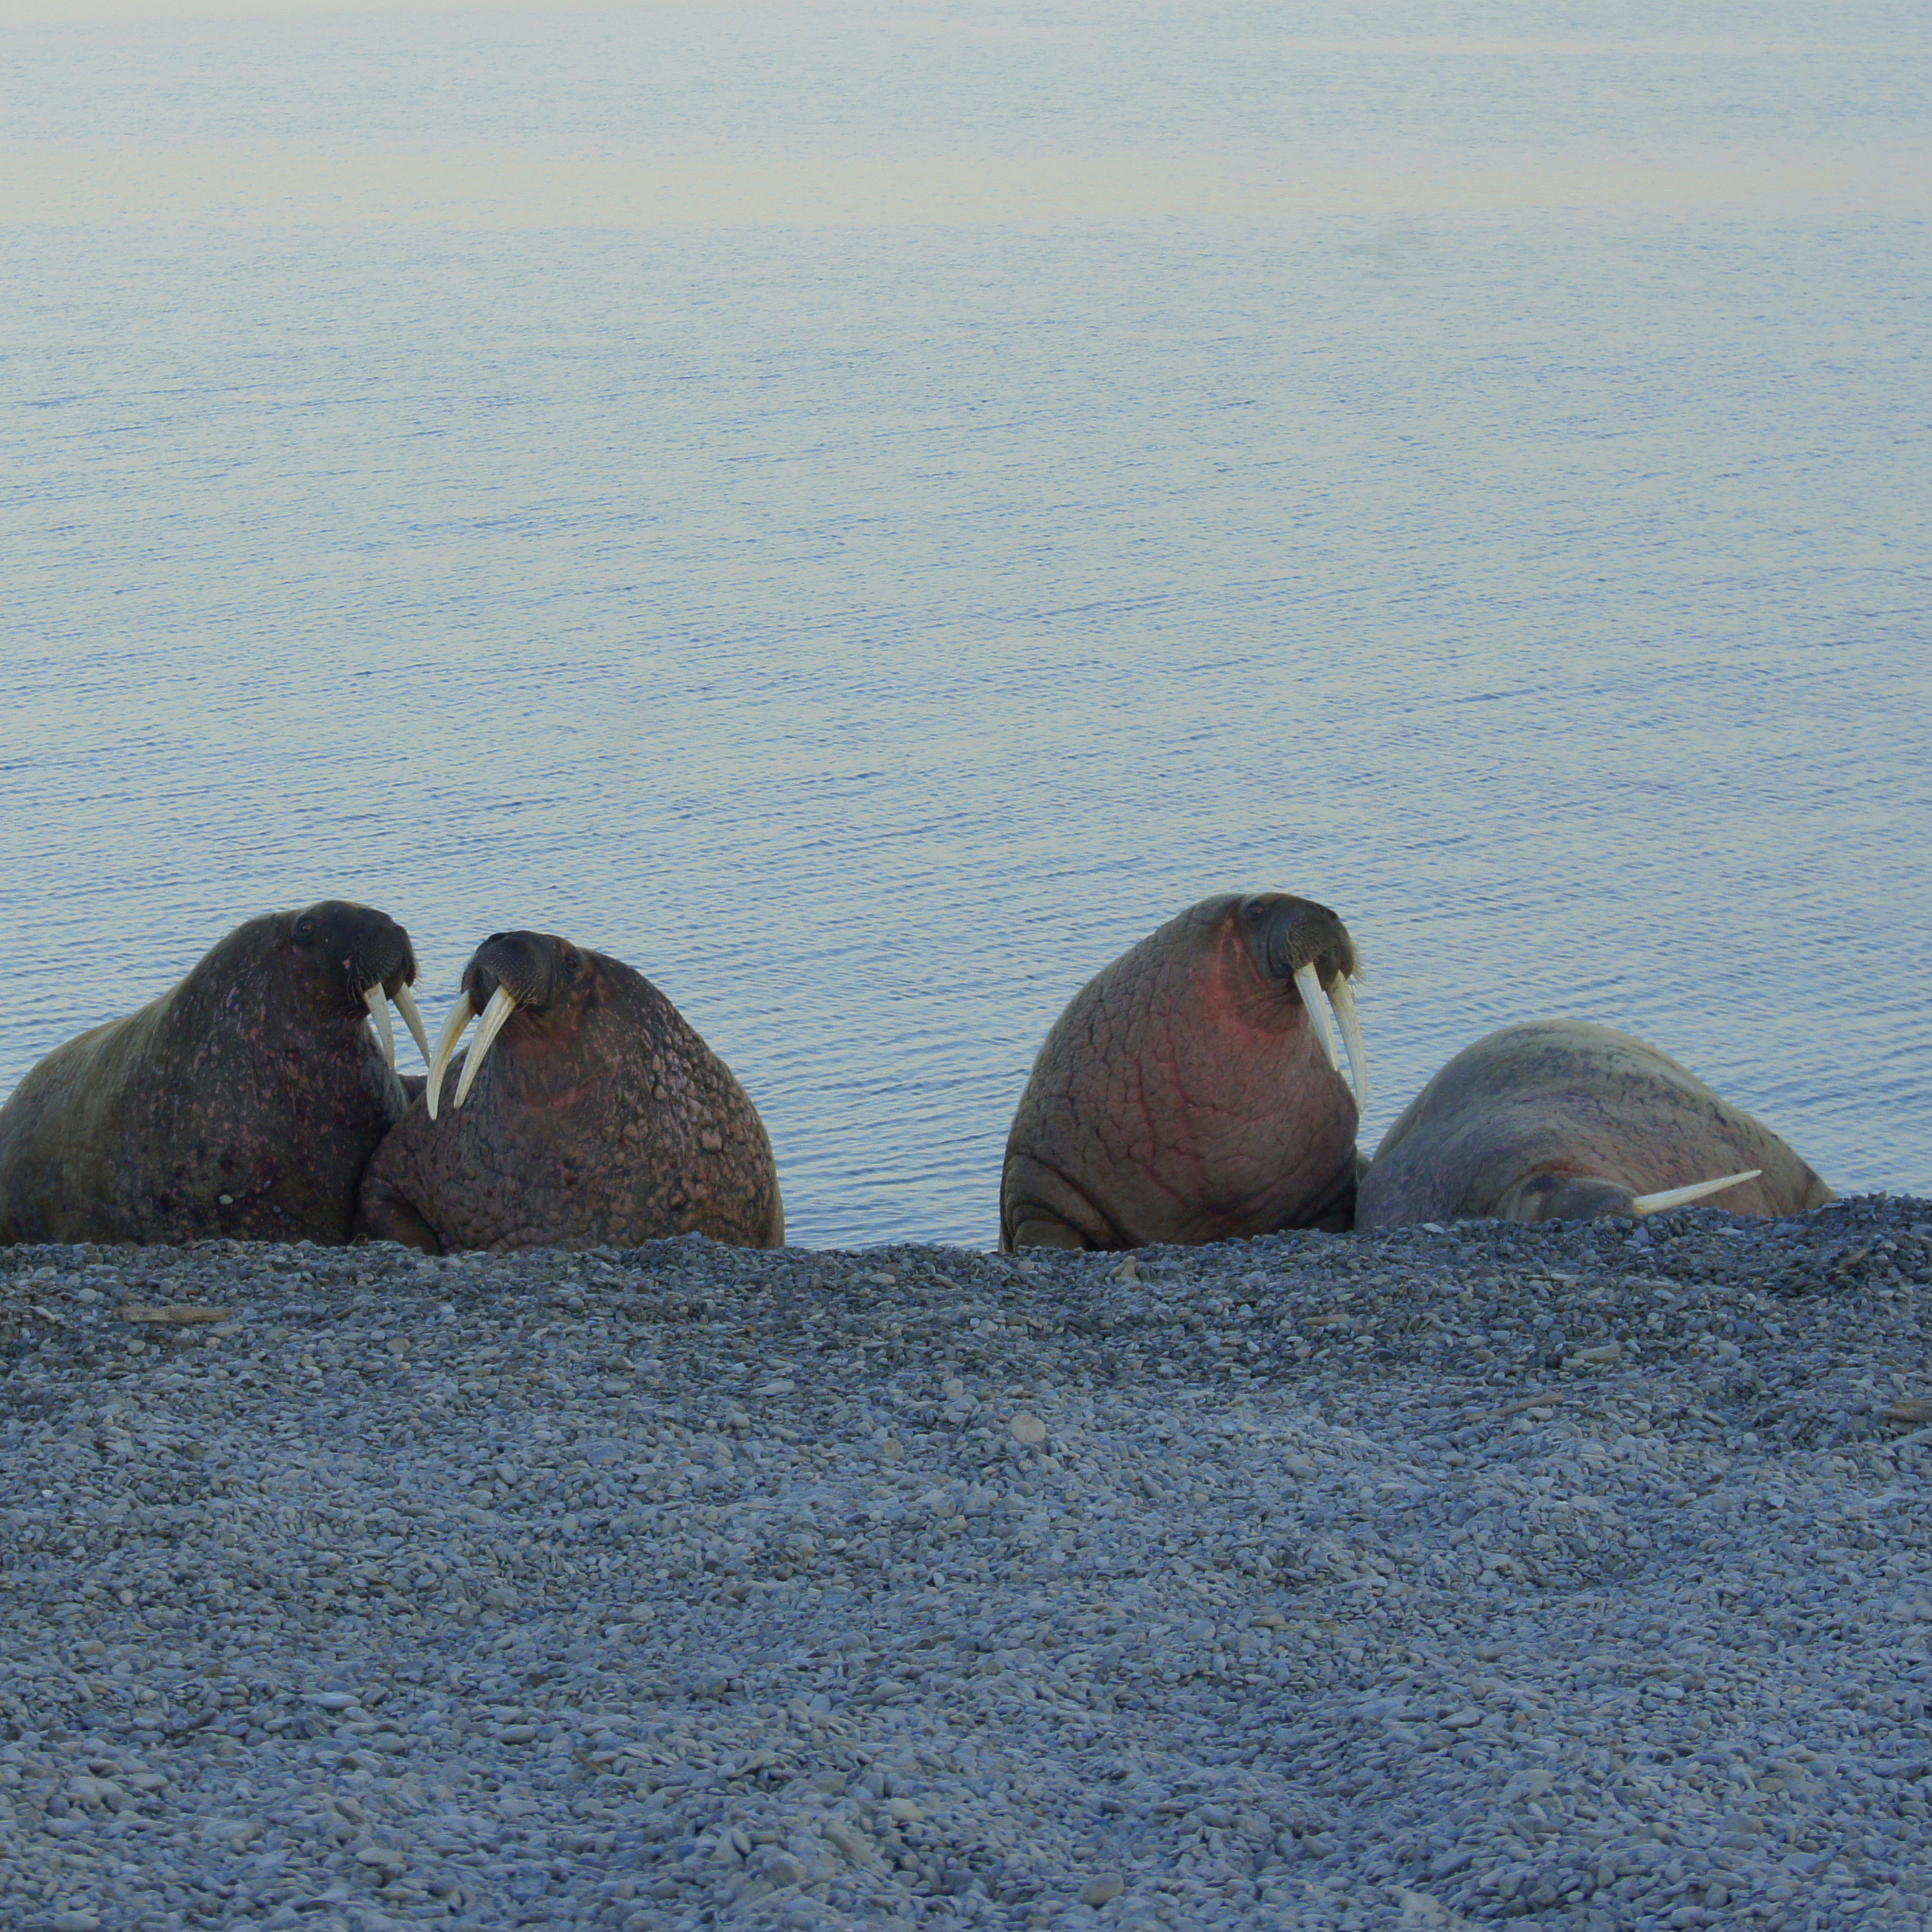 Команда ЦМИ МГУ выпустила статью о кормовых запасах моржа в Печорском море в журнале Aquatic Conservation